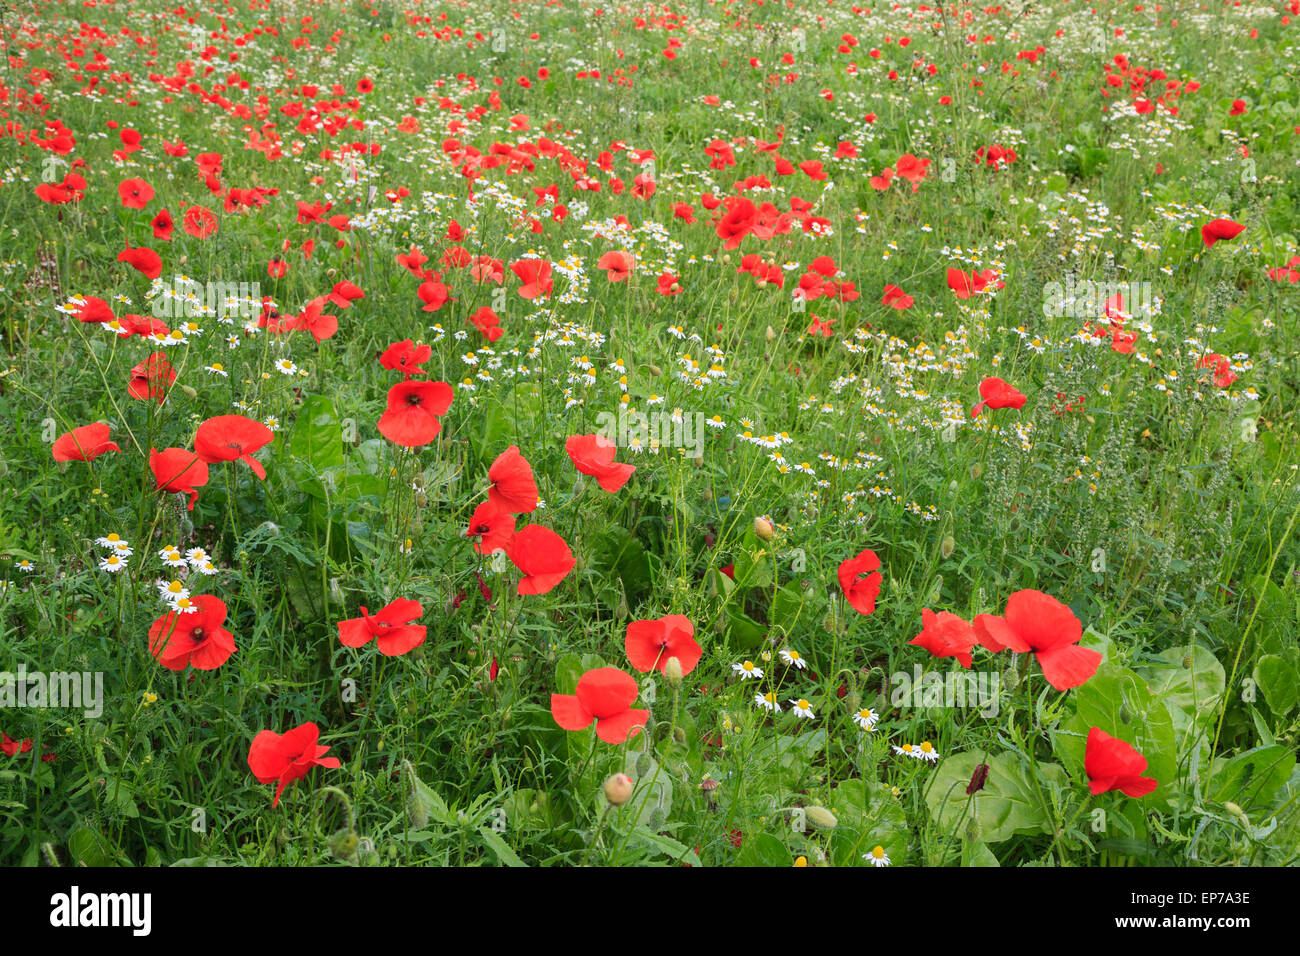 Coquelicots rouges communs (Papaver rhoeas) dans un pays de plus en plus terrain avec fleurs Camomille (Matricaria perforata) en été. Angleterre Royaume-uni Grande-Bretagne Banque D'Images